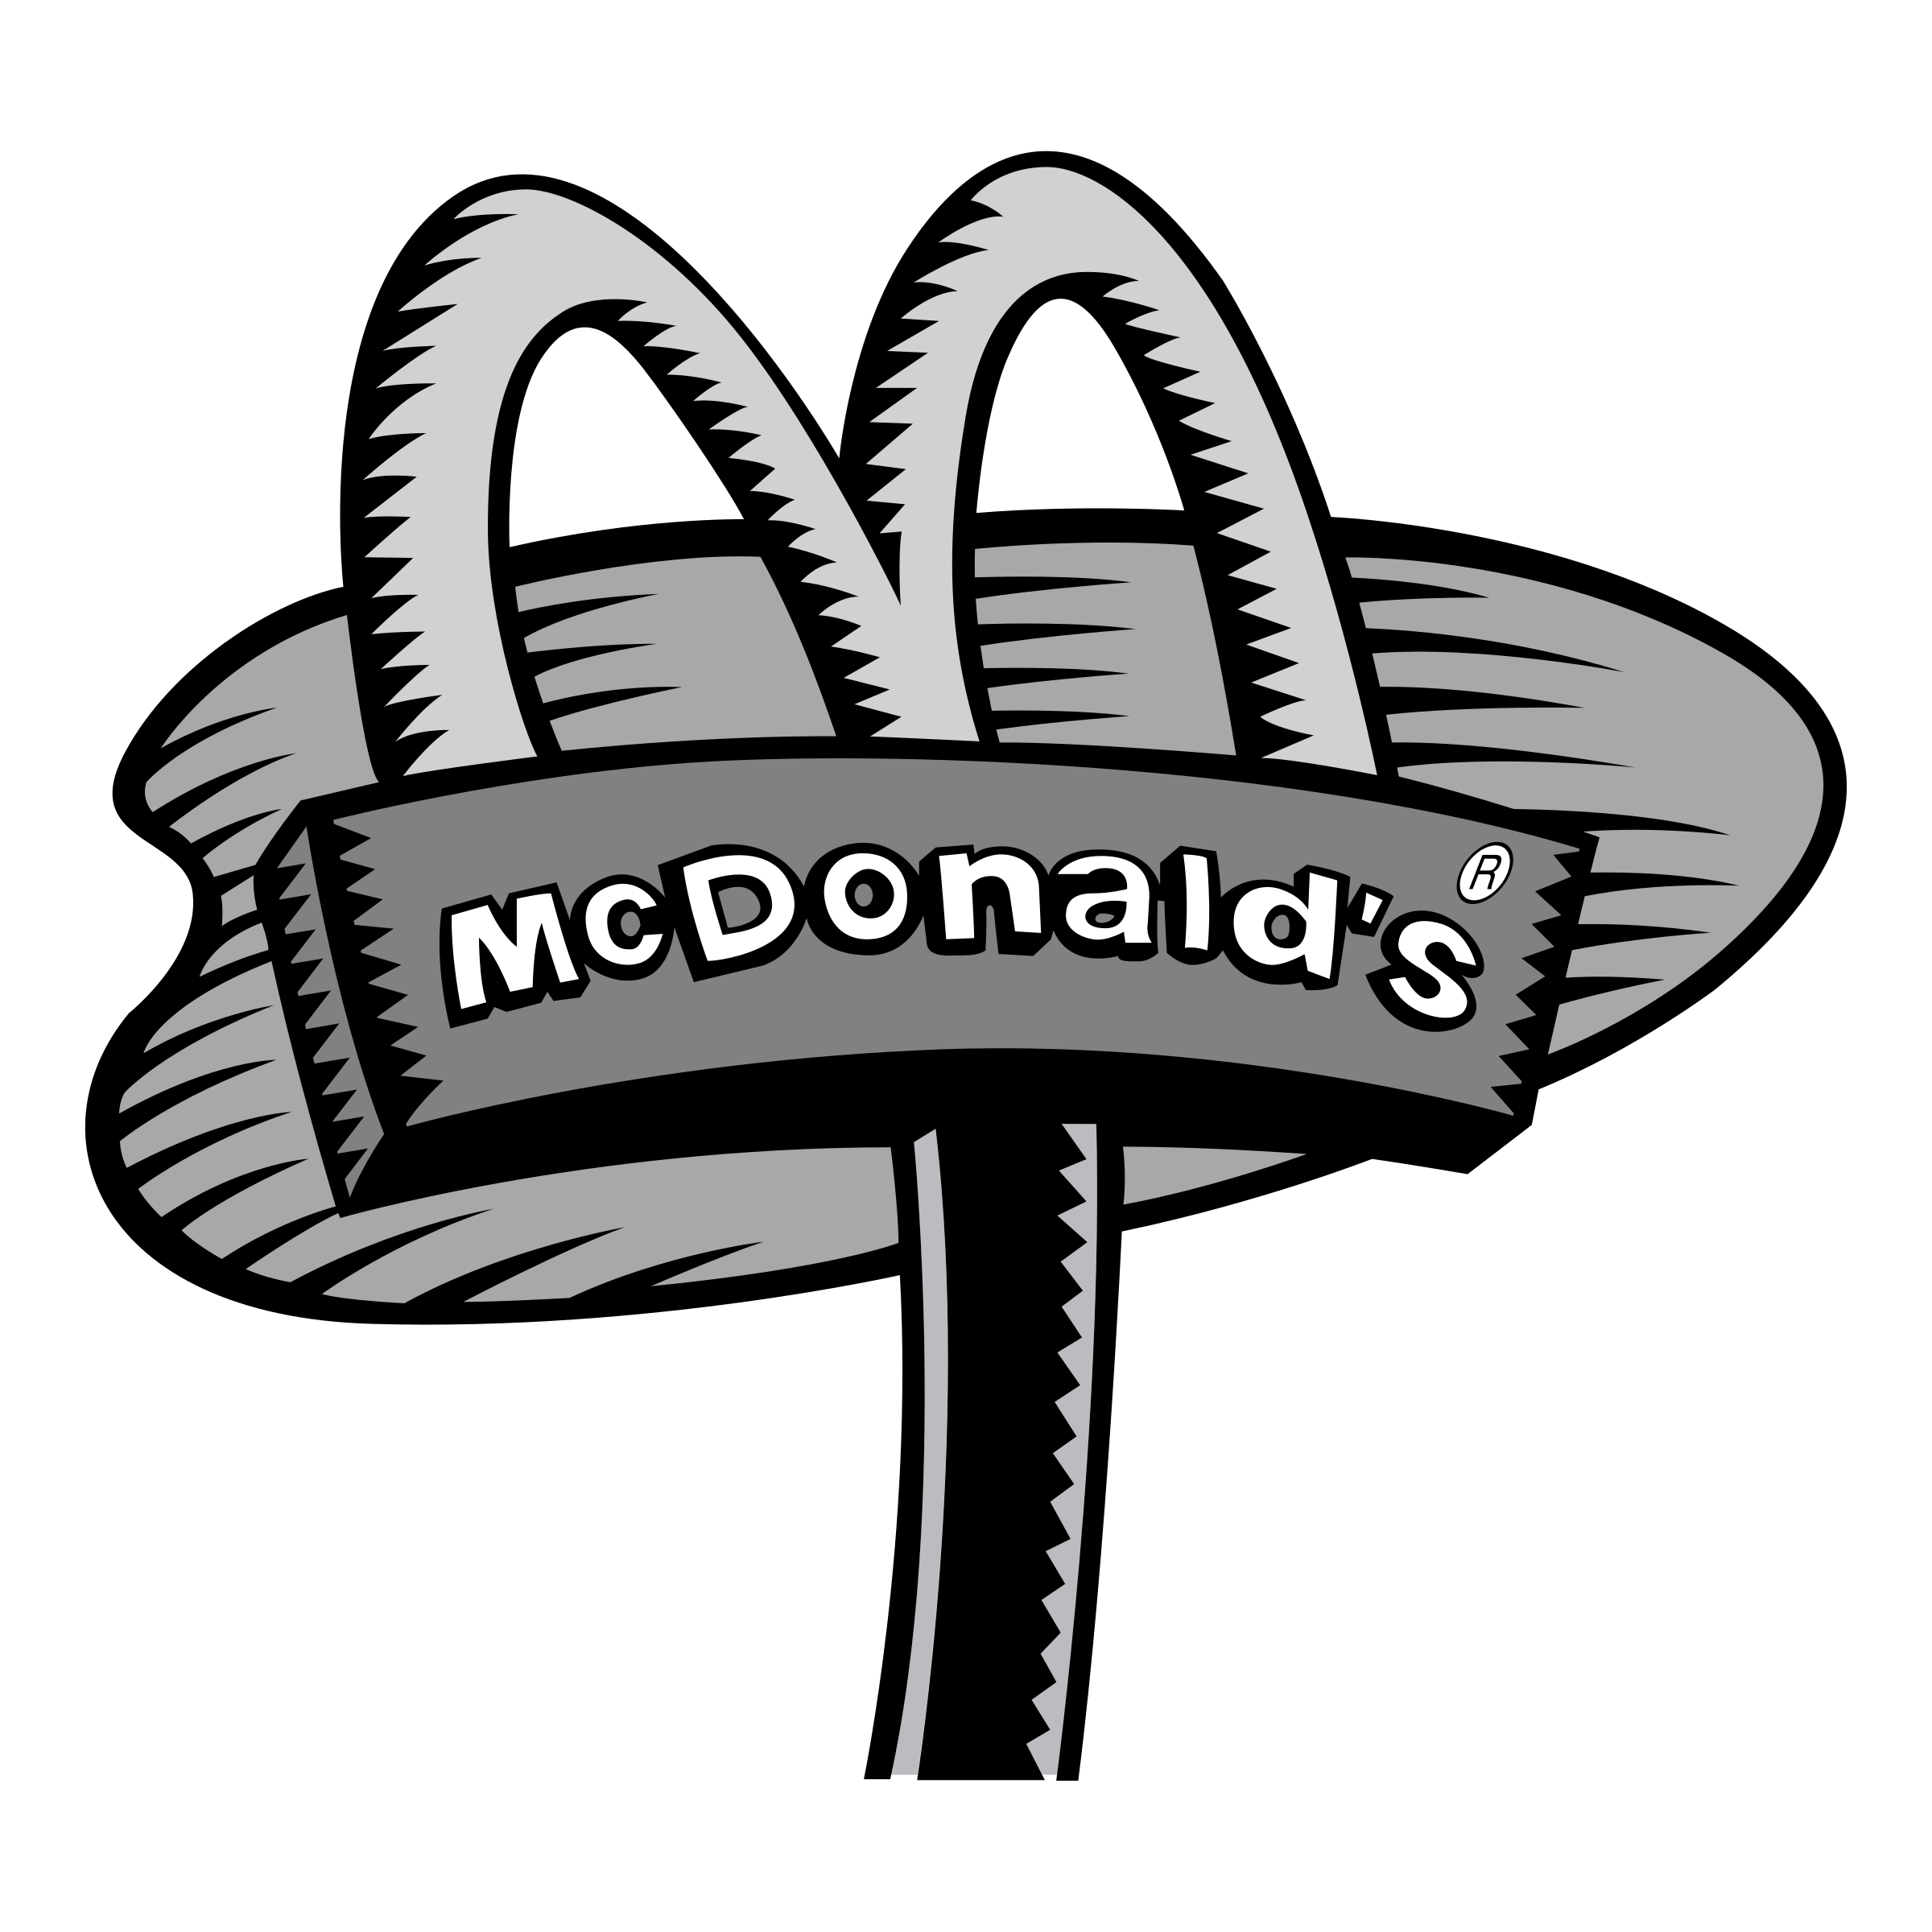 Mcdonalds clipart vector. Mcdonald s logo png